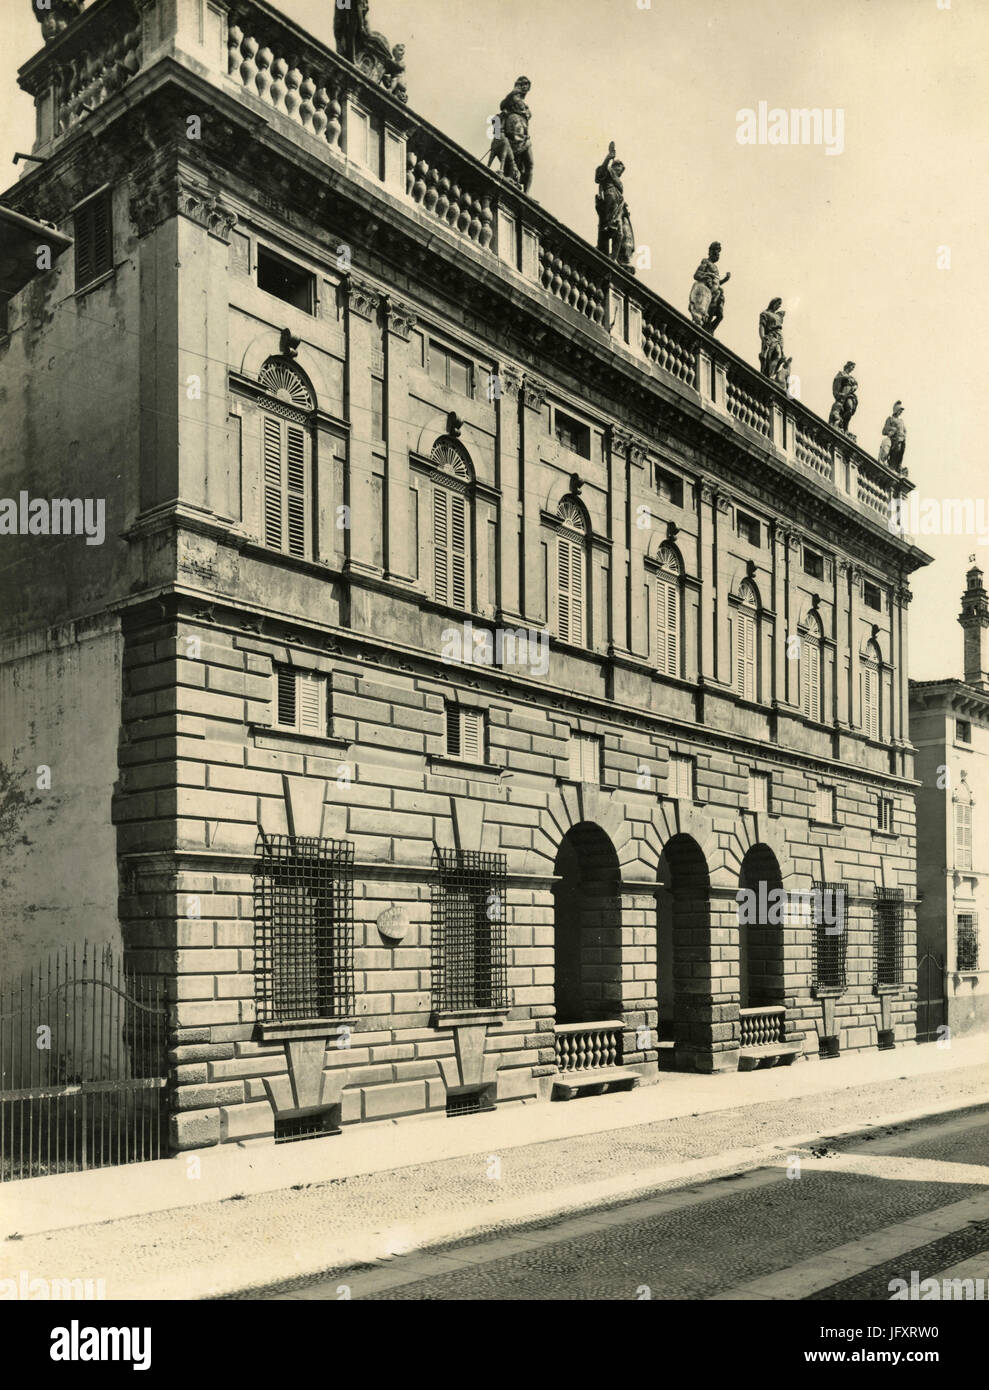 Palazzo Canossa, Verona, Italy Stock Photo - Alamy